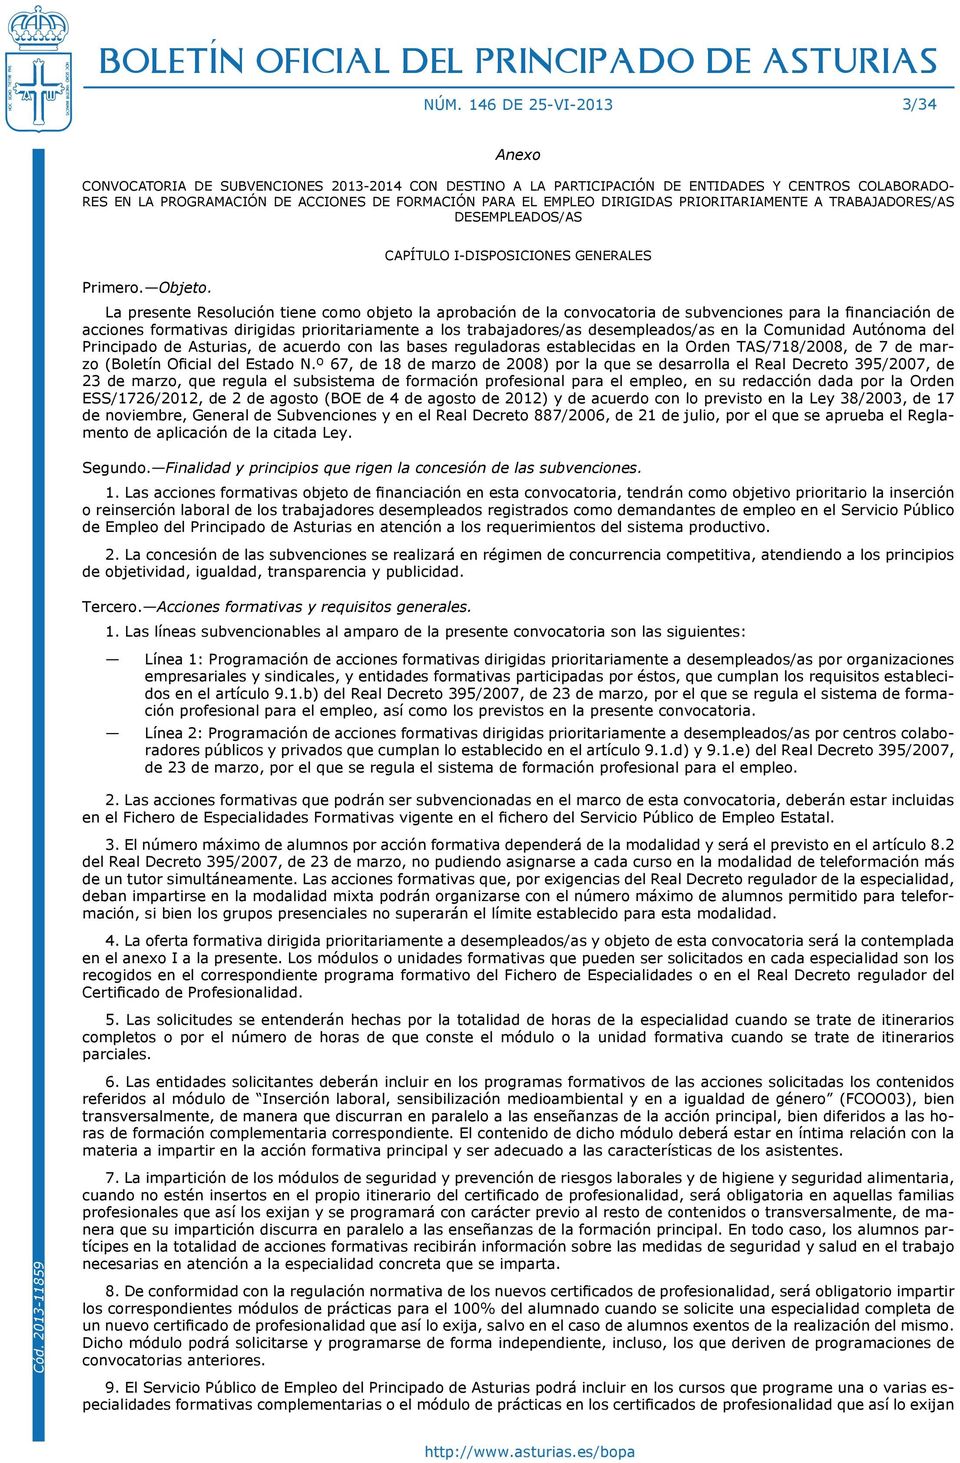 CAPÍTULO I-DISPOSICIONES GENERALES La presente Resolución tiene como objeto la aprobación de la convocatoria de subvenciones para la financiación de acciones formativas dirigidas prioritariamente a